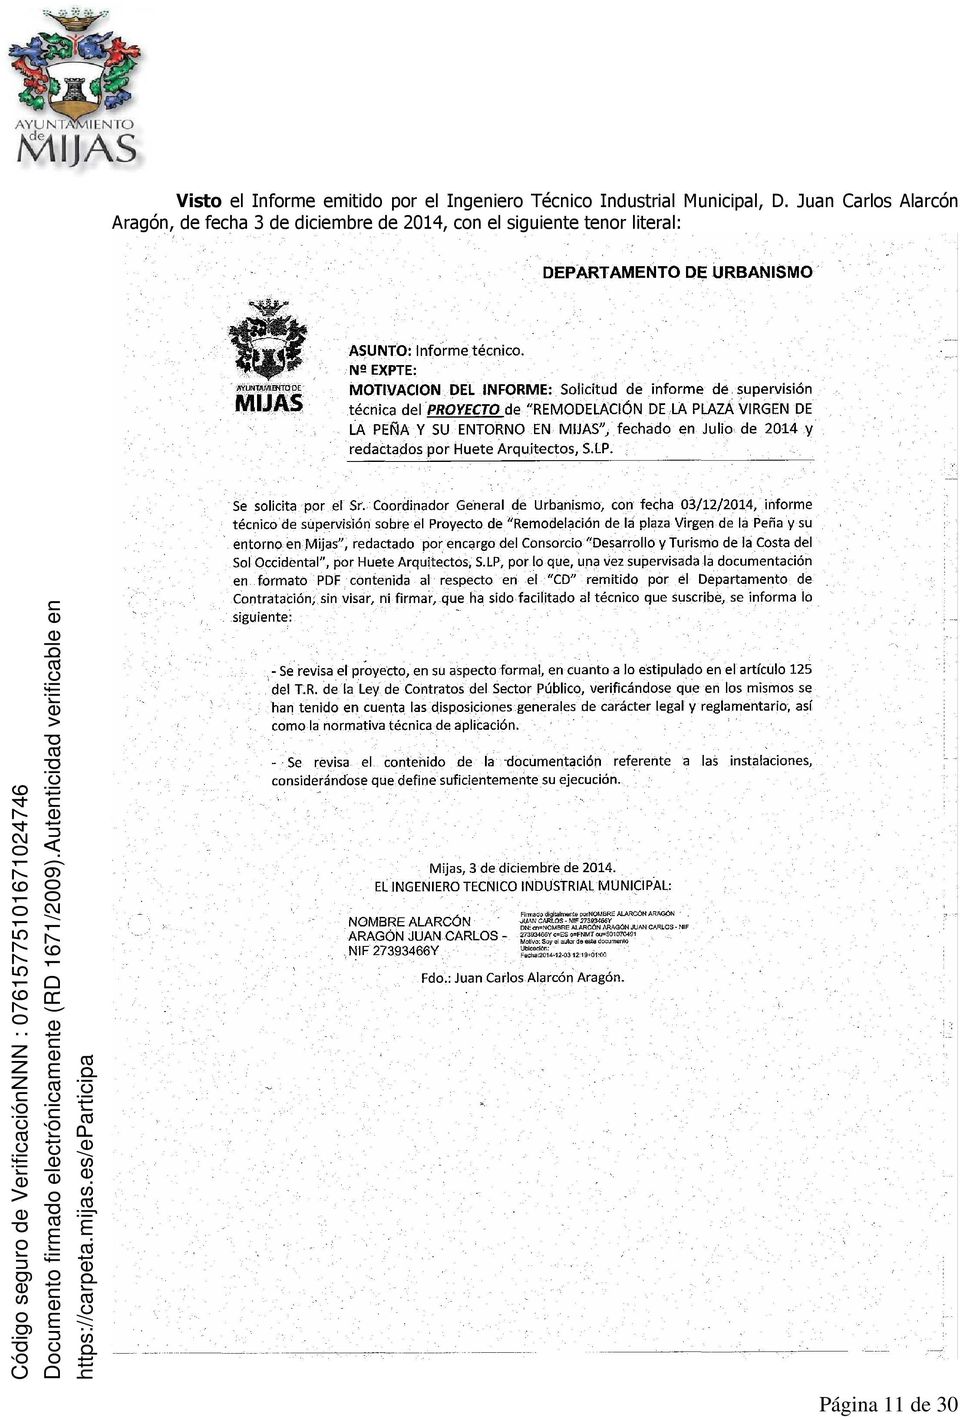 Juan Carlos Alarcón Aragón, de fecha 3 de diciembre de